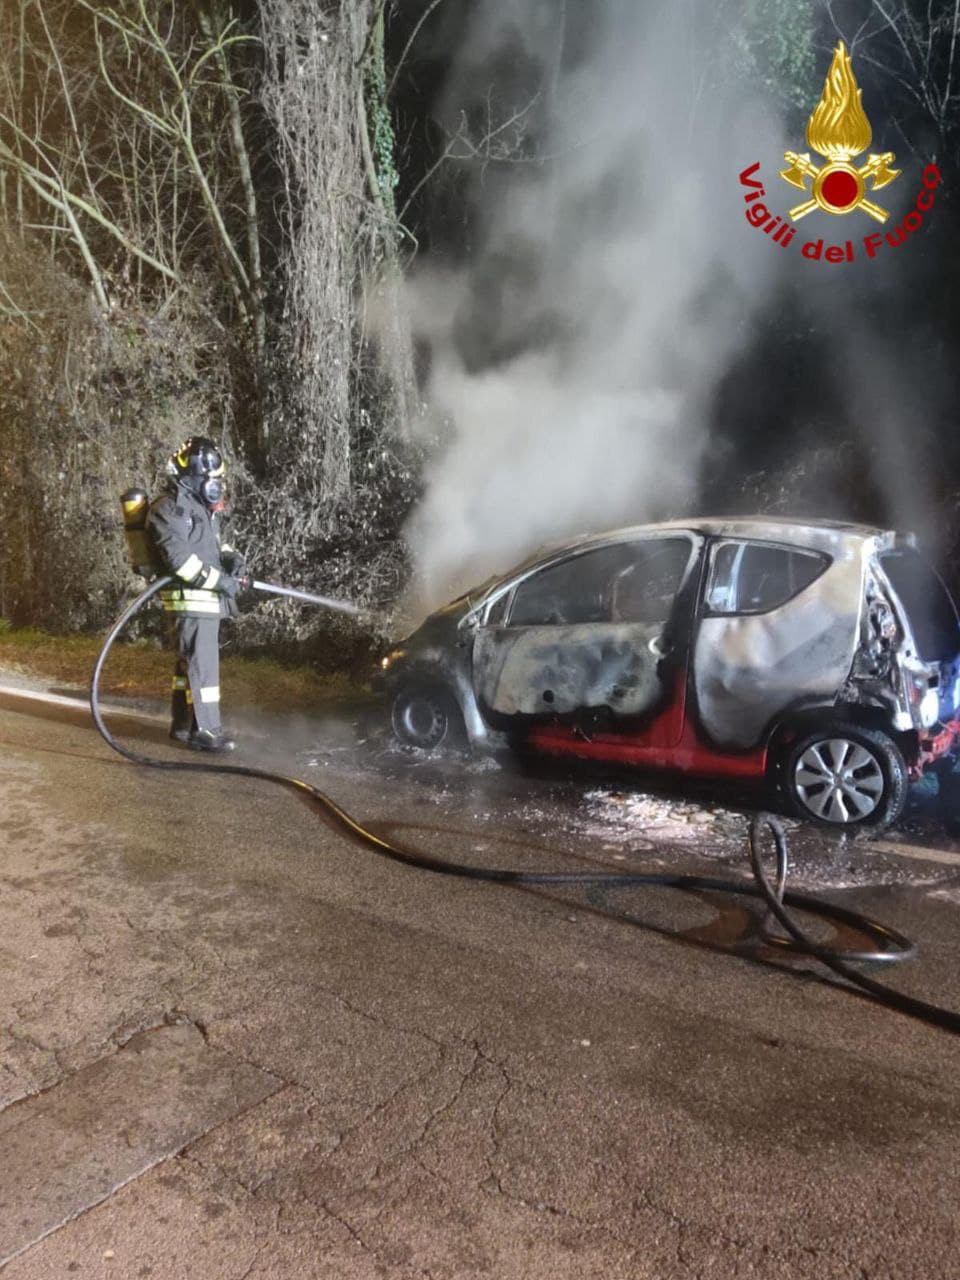 Ieri su ilS: nuova scuola superiore a Saronno, auto in fiamme nella notte, spacciatori “in fuga” da Origgio e Uboldo